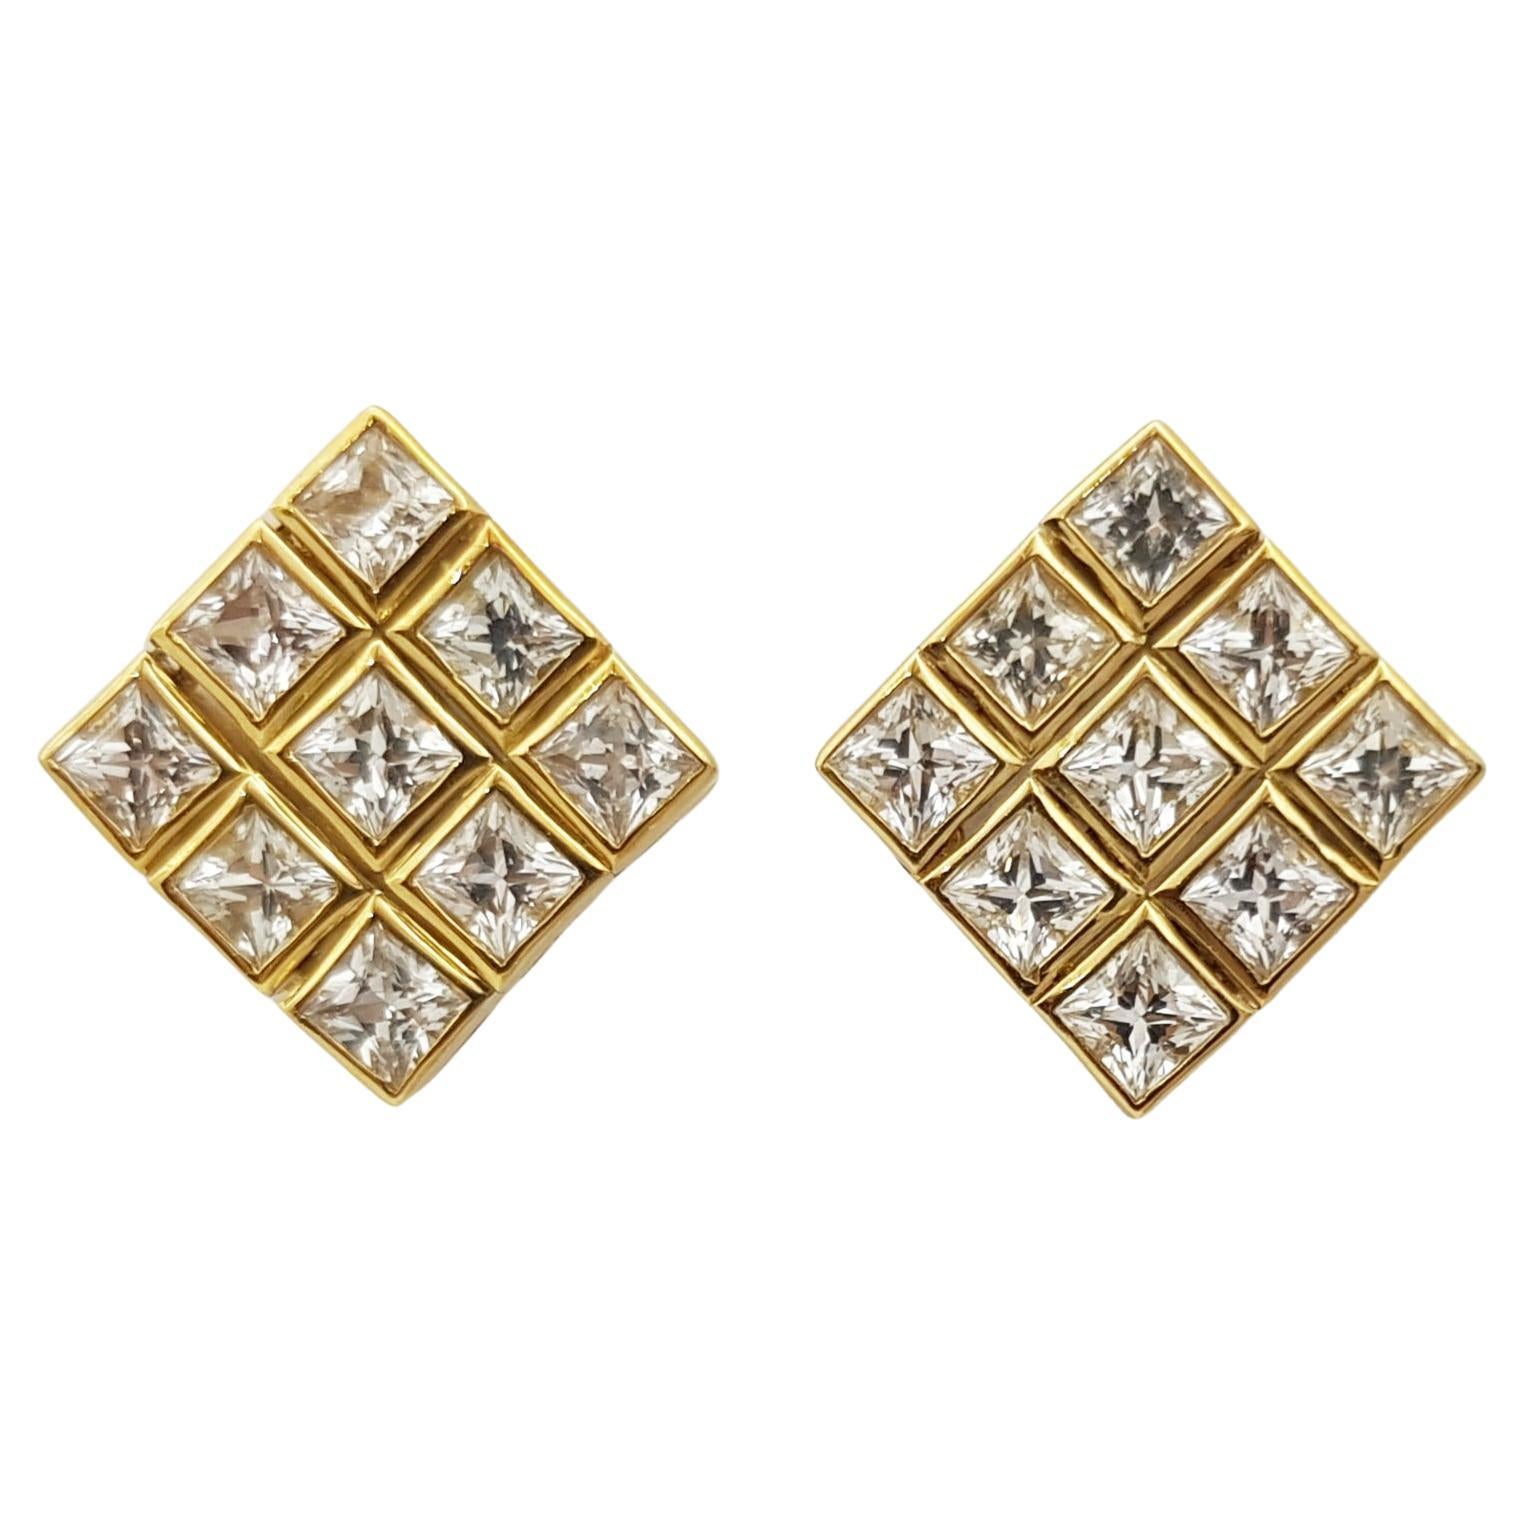 White Sapphire Earrings Set in 18 Karat Gold Settings For Sale